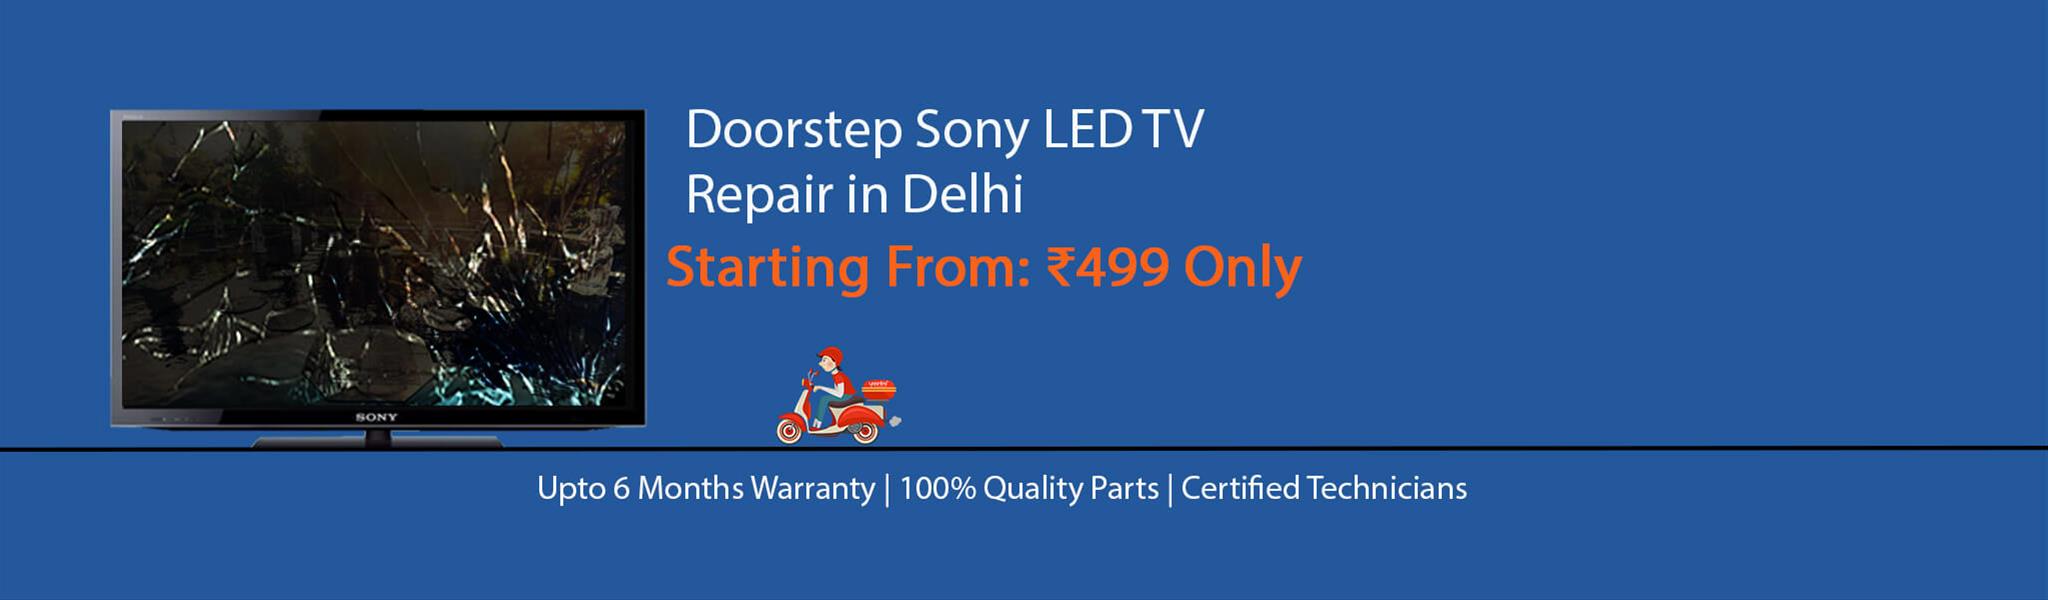 sony-tv-repair-in-delhi.jpg